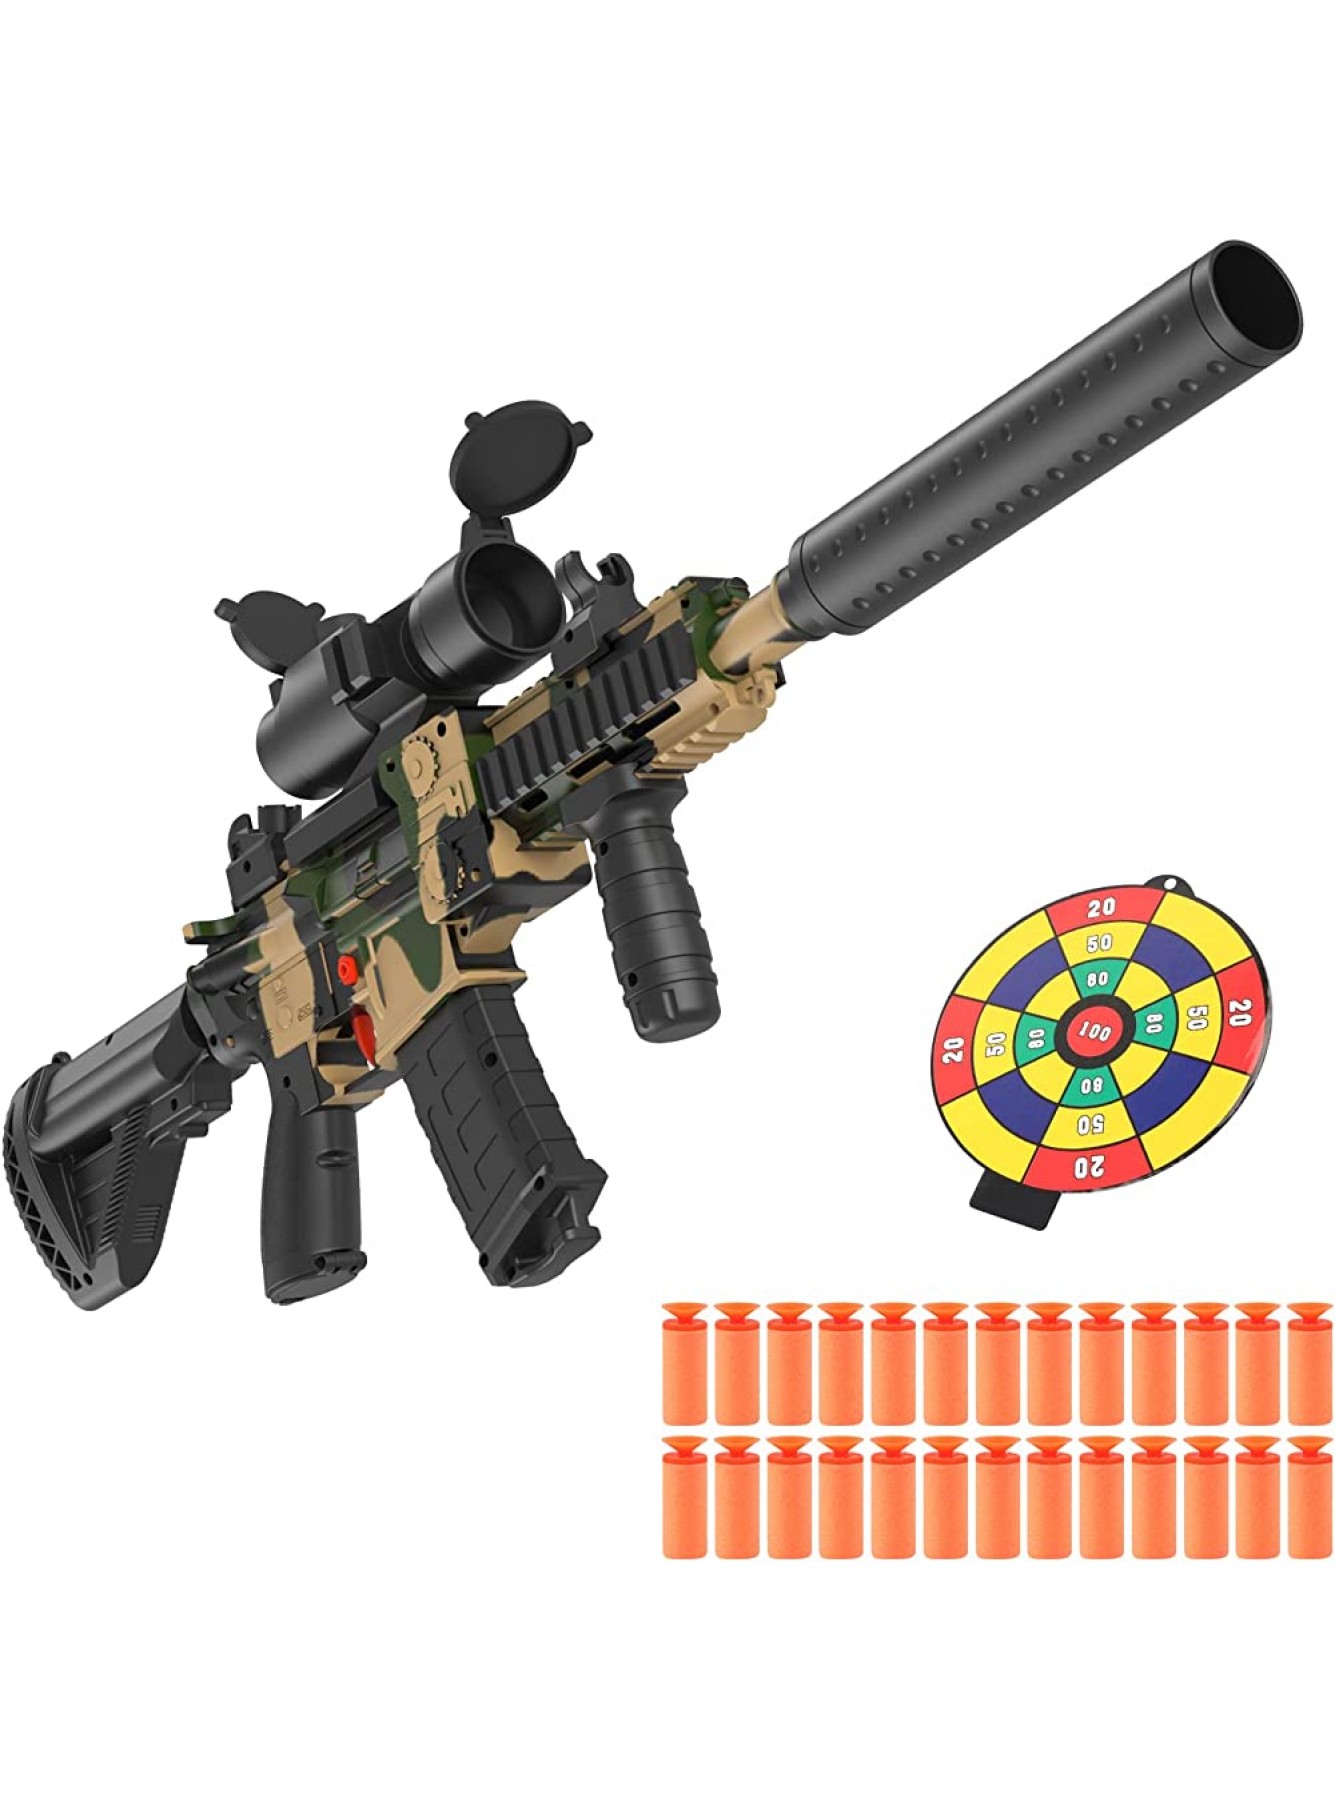 BeaSaf Elektrisch Spielzeug Pistol Spielzeug Pistol mit 8 Clip Magazin Automatische Blaster für Nerf Pfeilen mit 100 Munition Für Kinder ab 6+ Jahren,Teenager Erwachsene - B09HGDHYJS